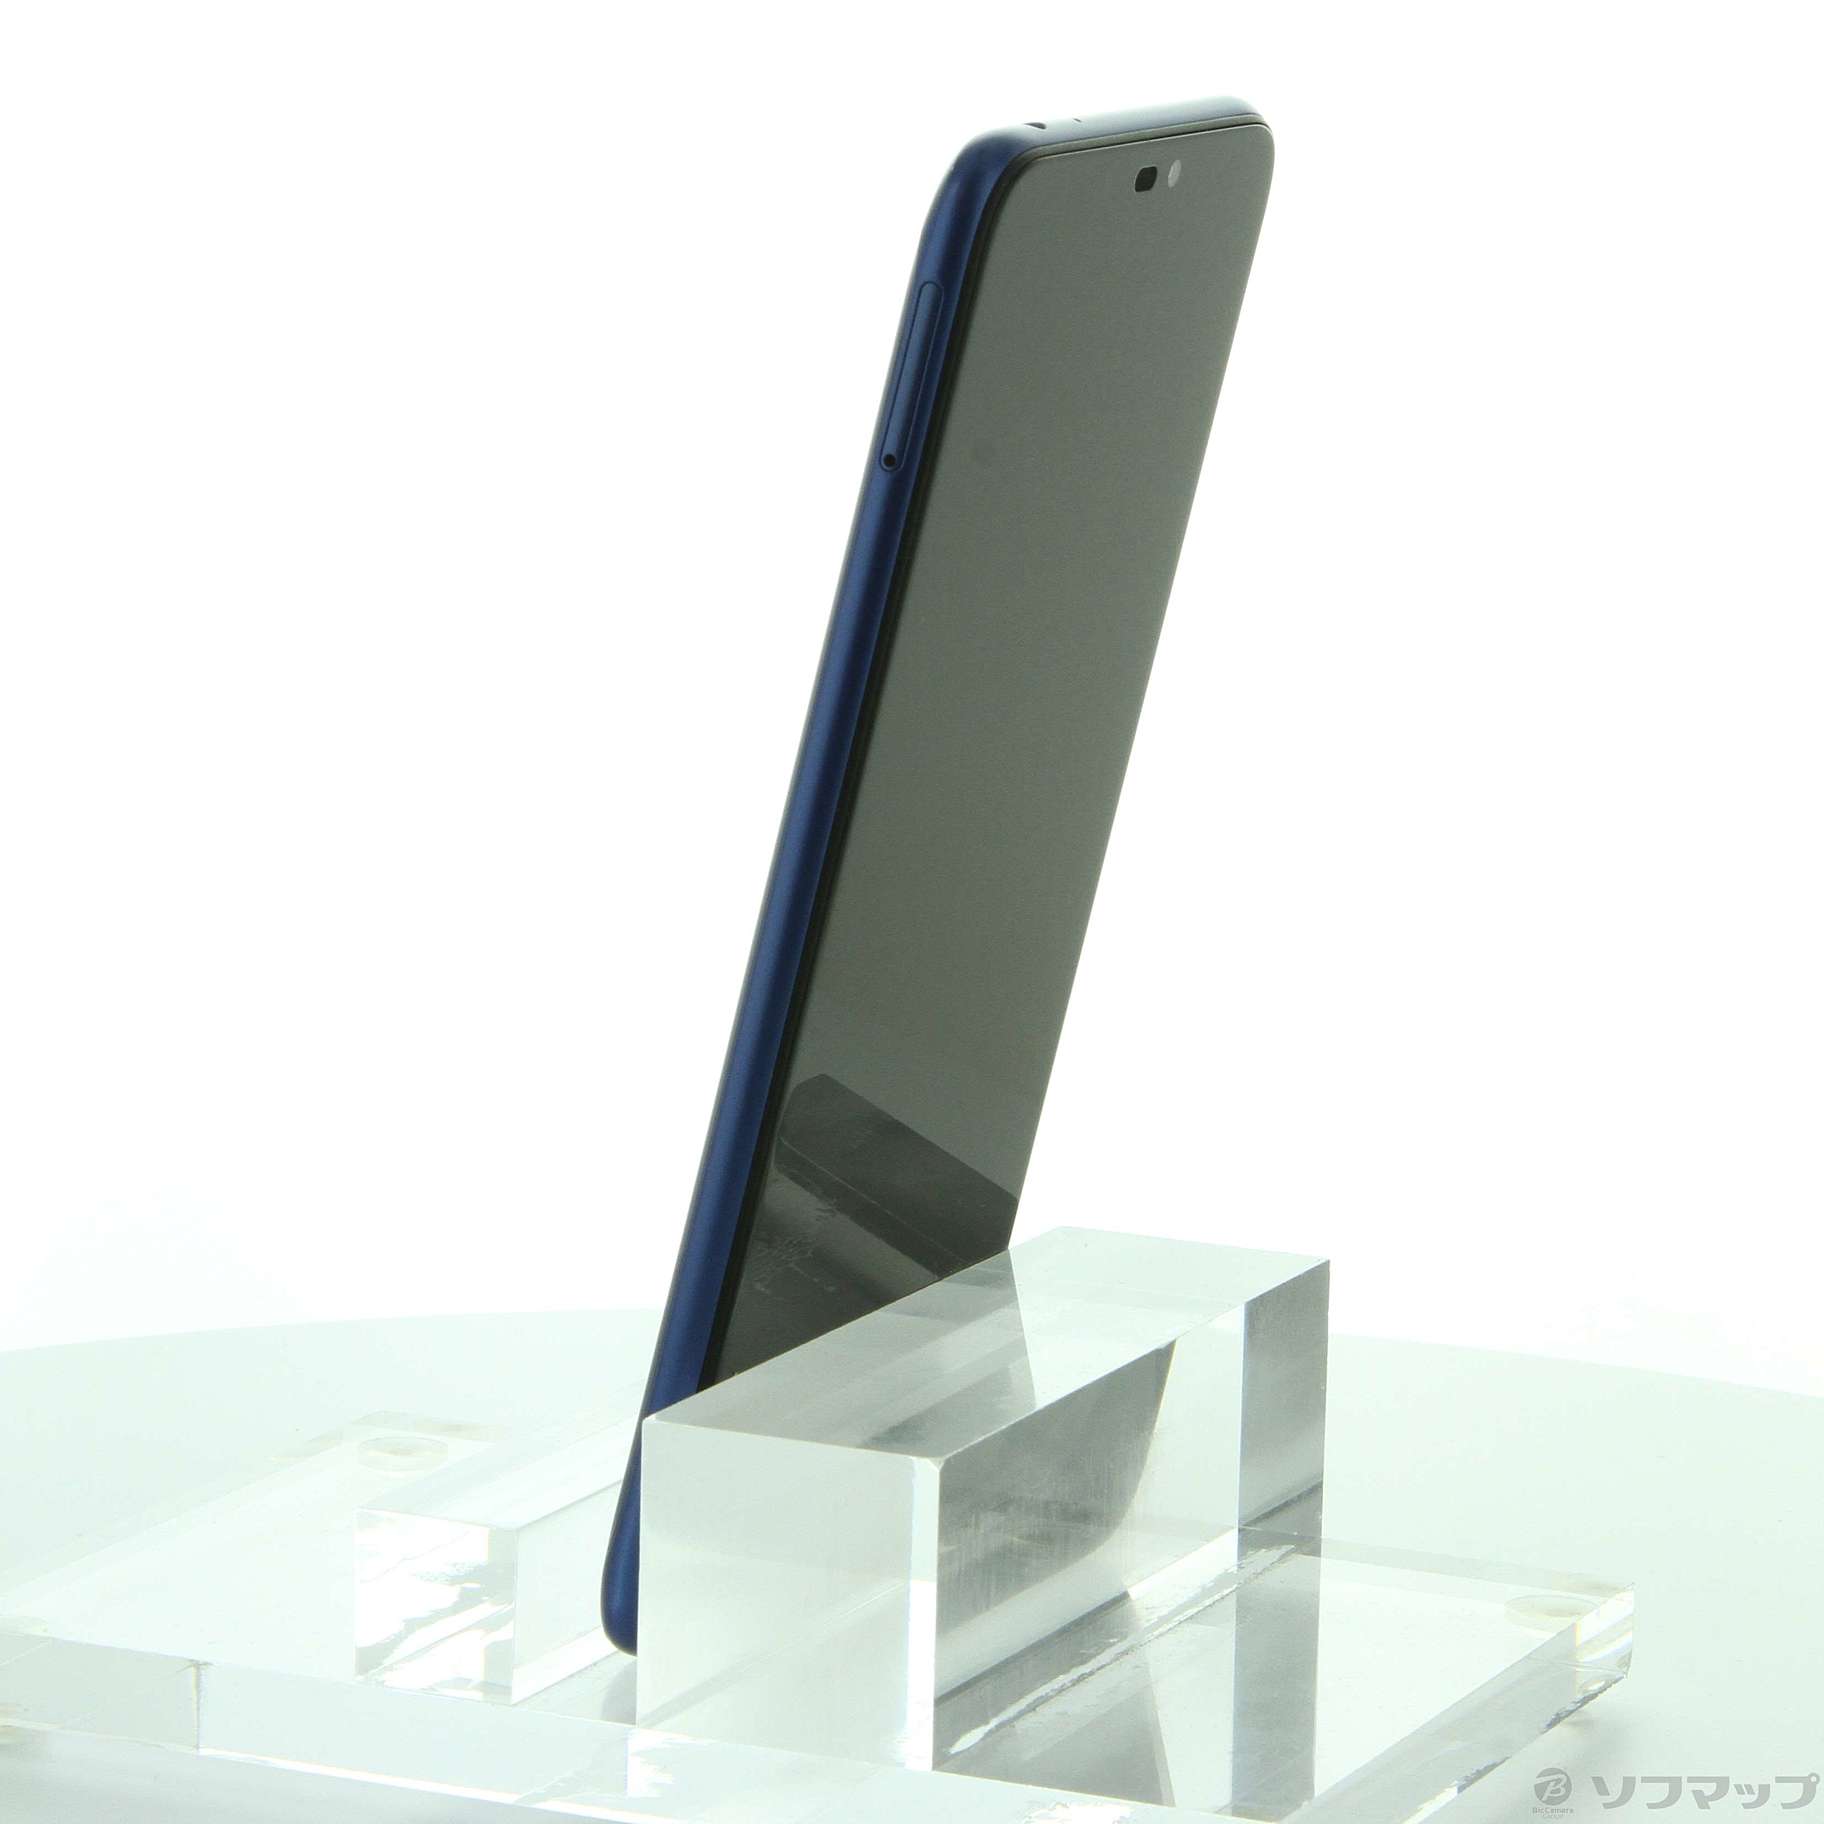 ZenFone Max M2 32GB スペースブルー ZB633KL-BL32S4 SIMフリー